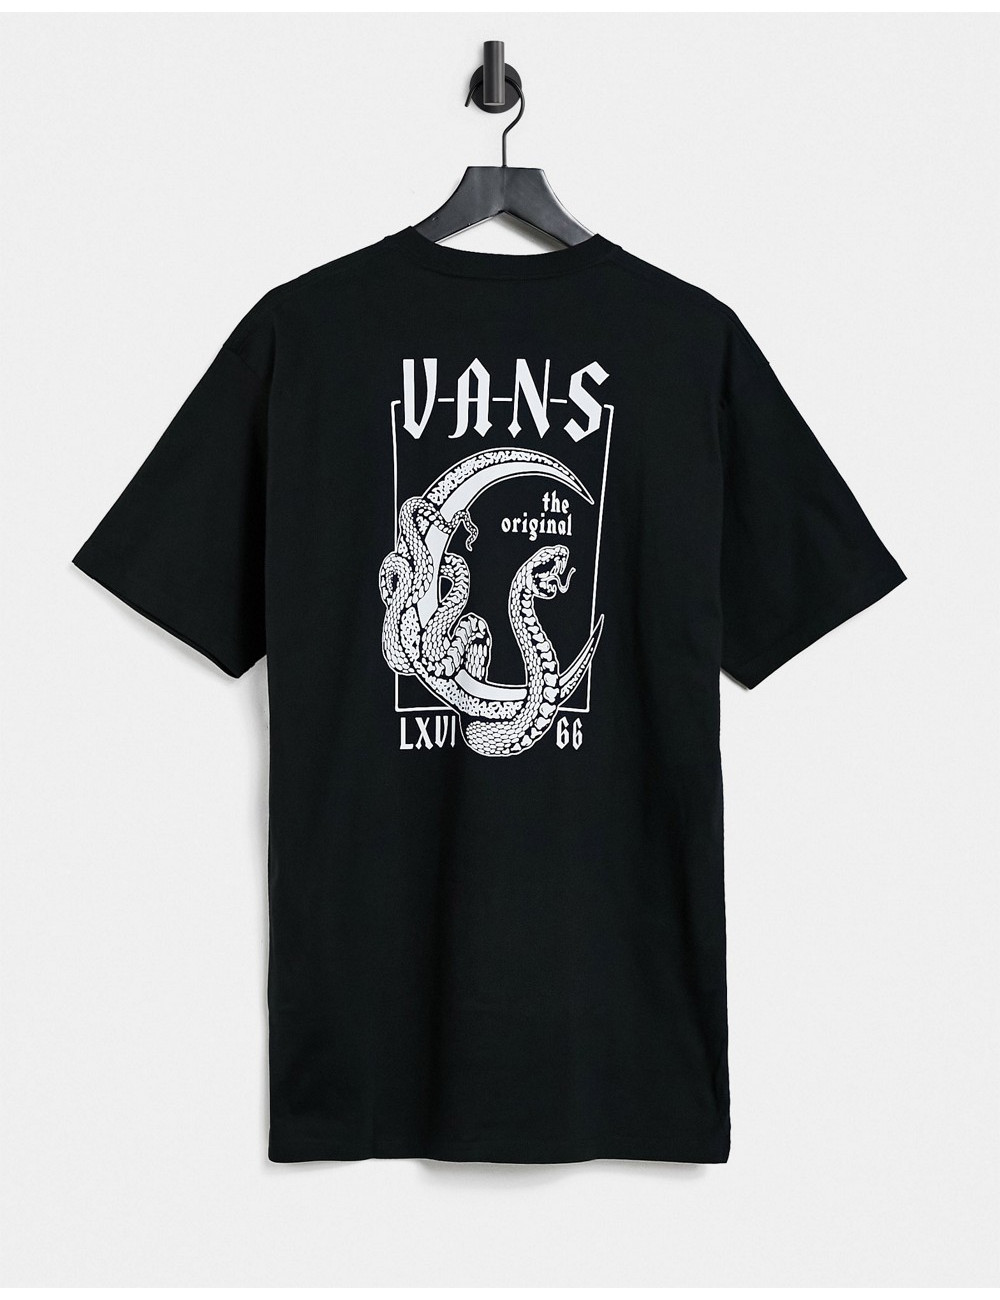 Vans Crescent t-shirt in black